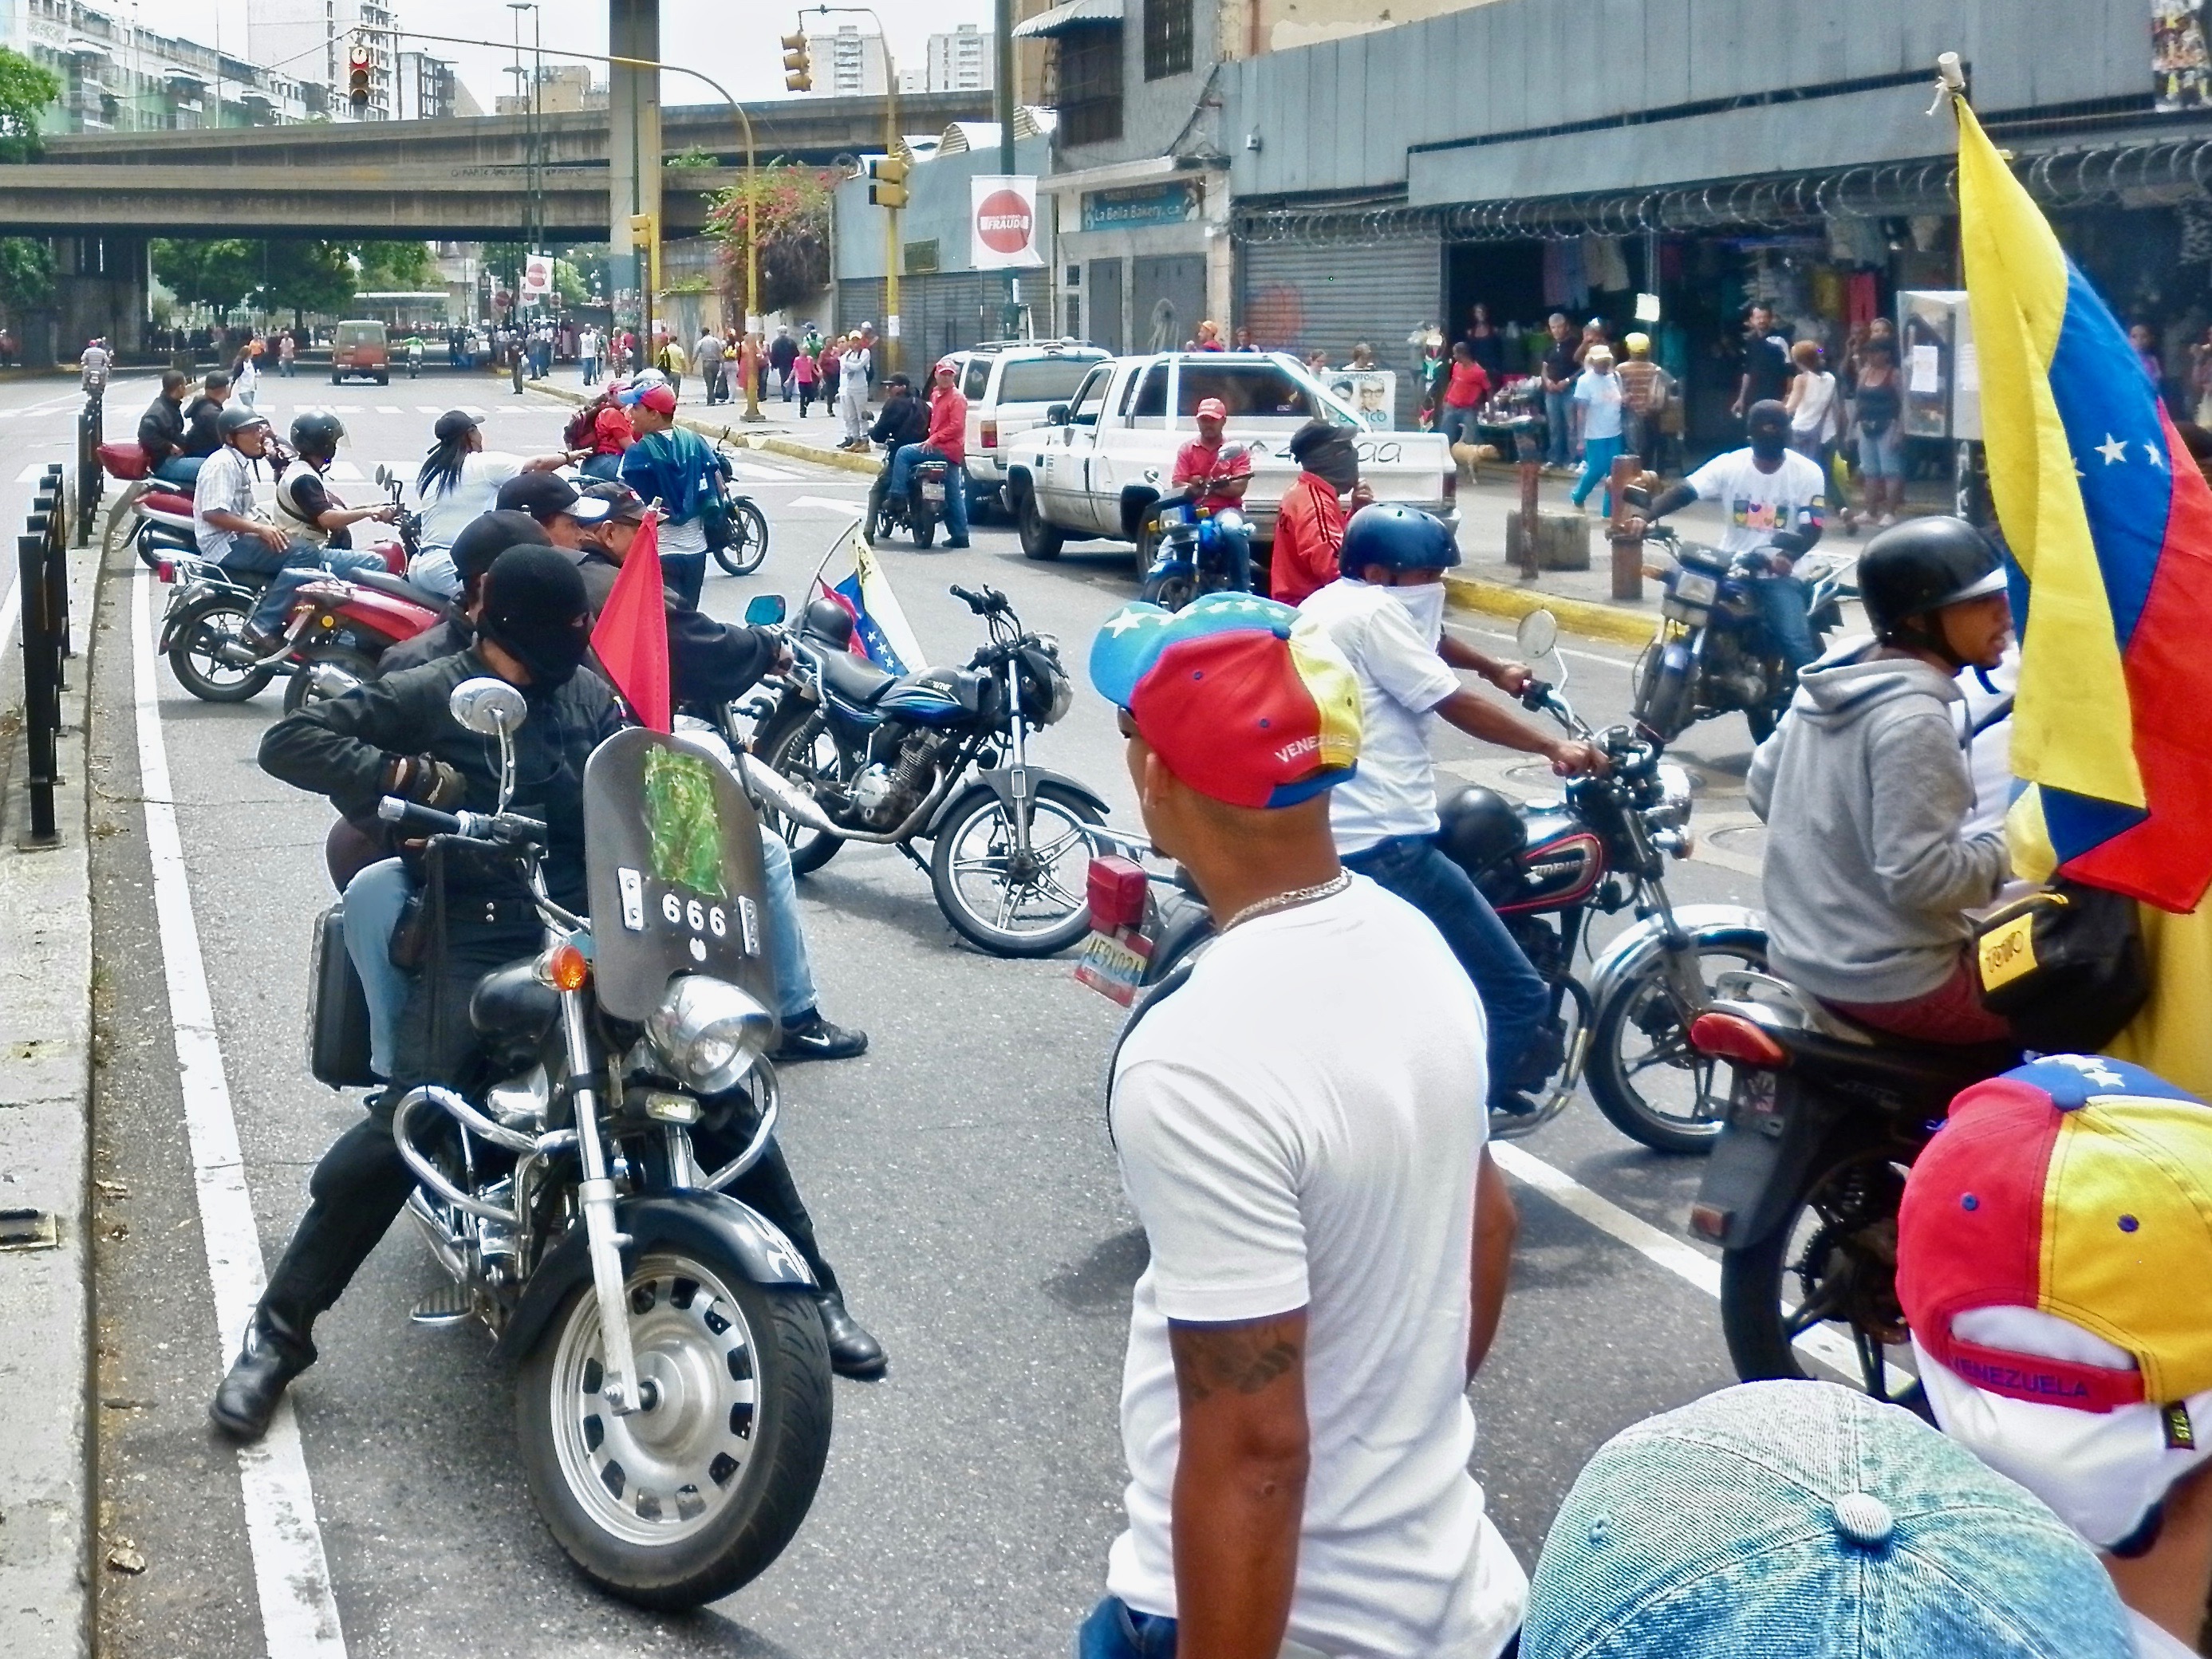 Членове на колективос се противопоставят на протест на опозицията. Източник: The Venezuela Reality Show